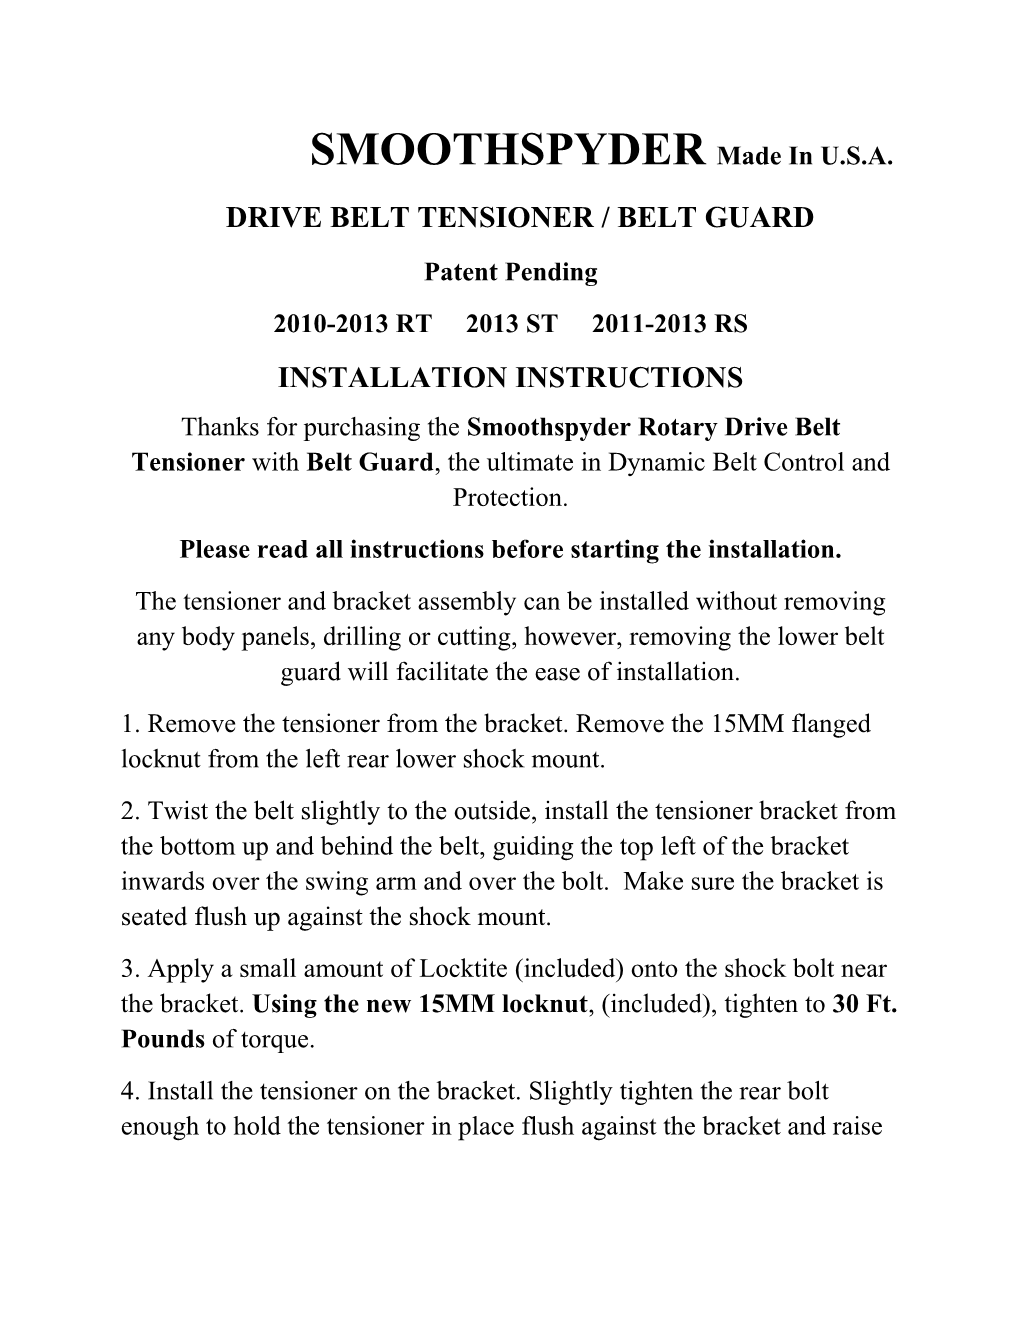 Drive Belt Tensioner / Belt Guard